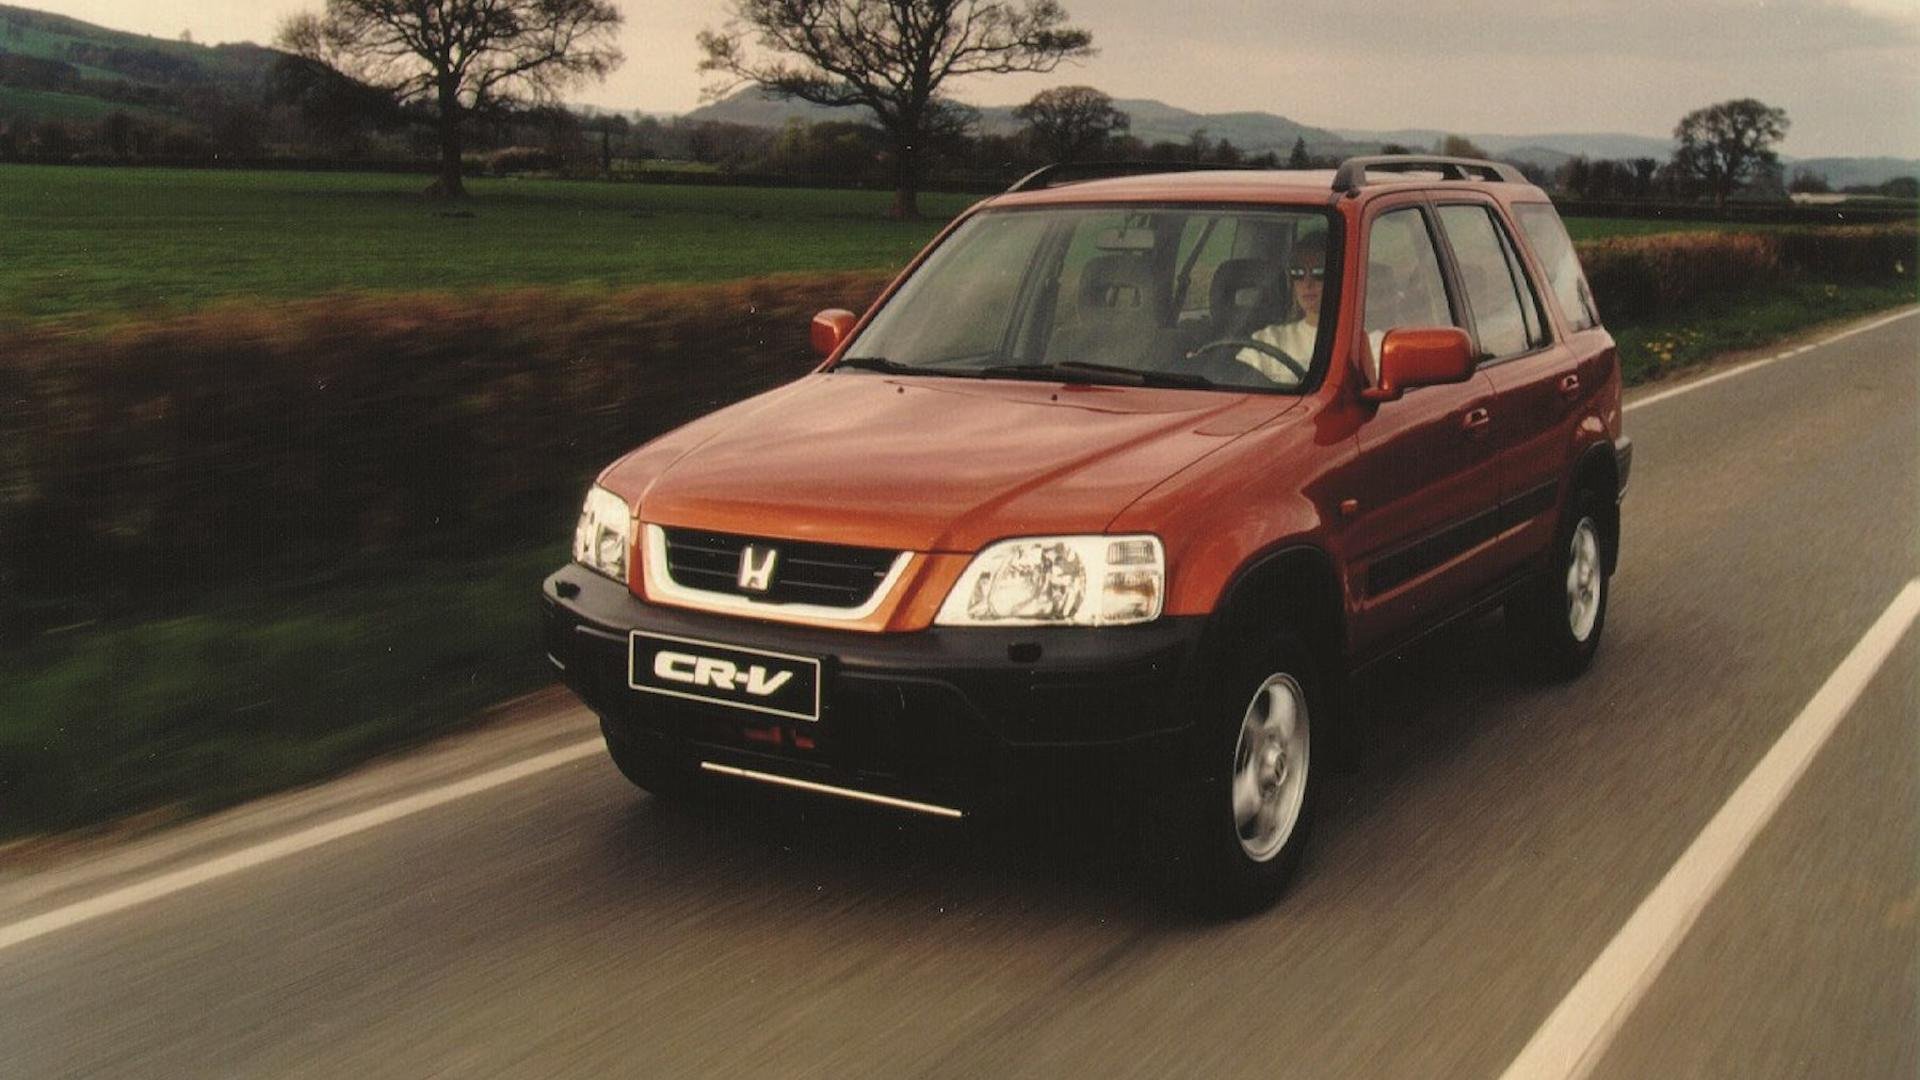 Crv 1 поколения. Honda CR-V 1995-2001. Honda CRV 1. Honda CR-V 1995-1999. Honda CRV 1995.